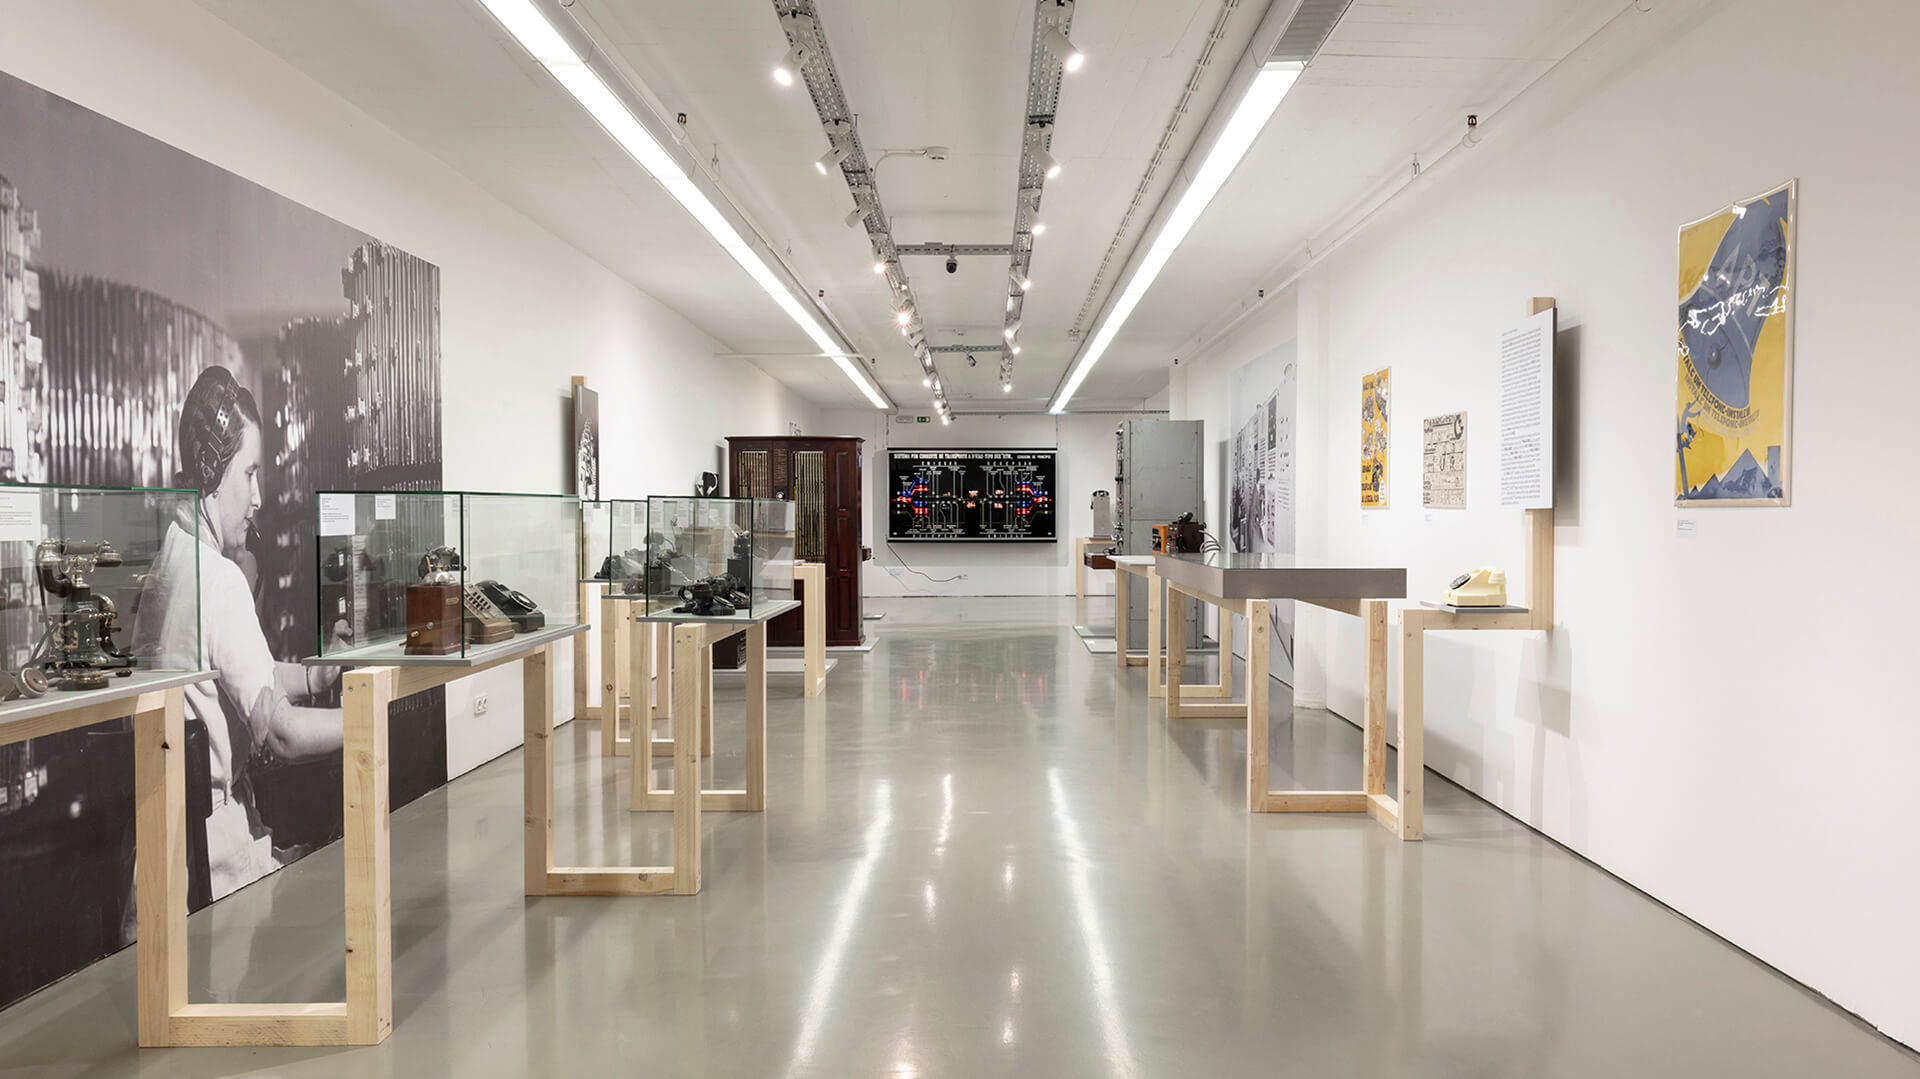 Temporary Exhibition “Sinal – 100 Anos de Design das Telecomunicações e dos Correios em Portugal”, 2019